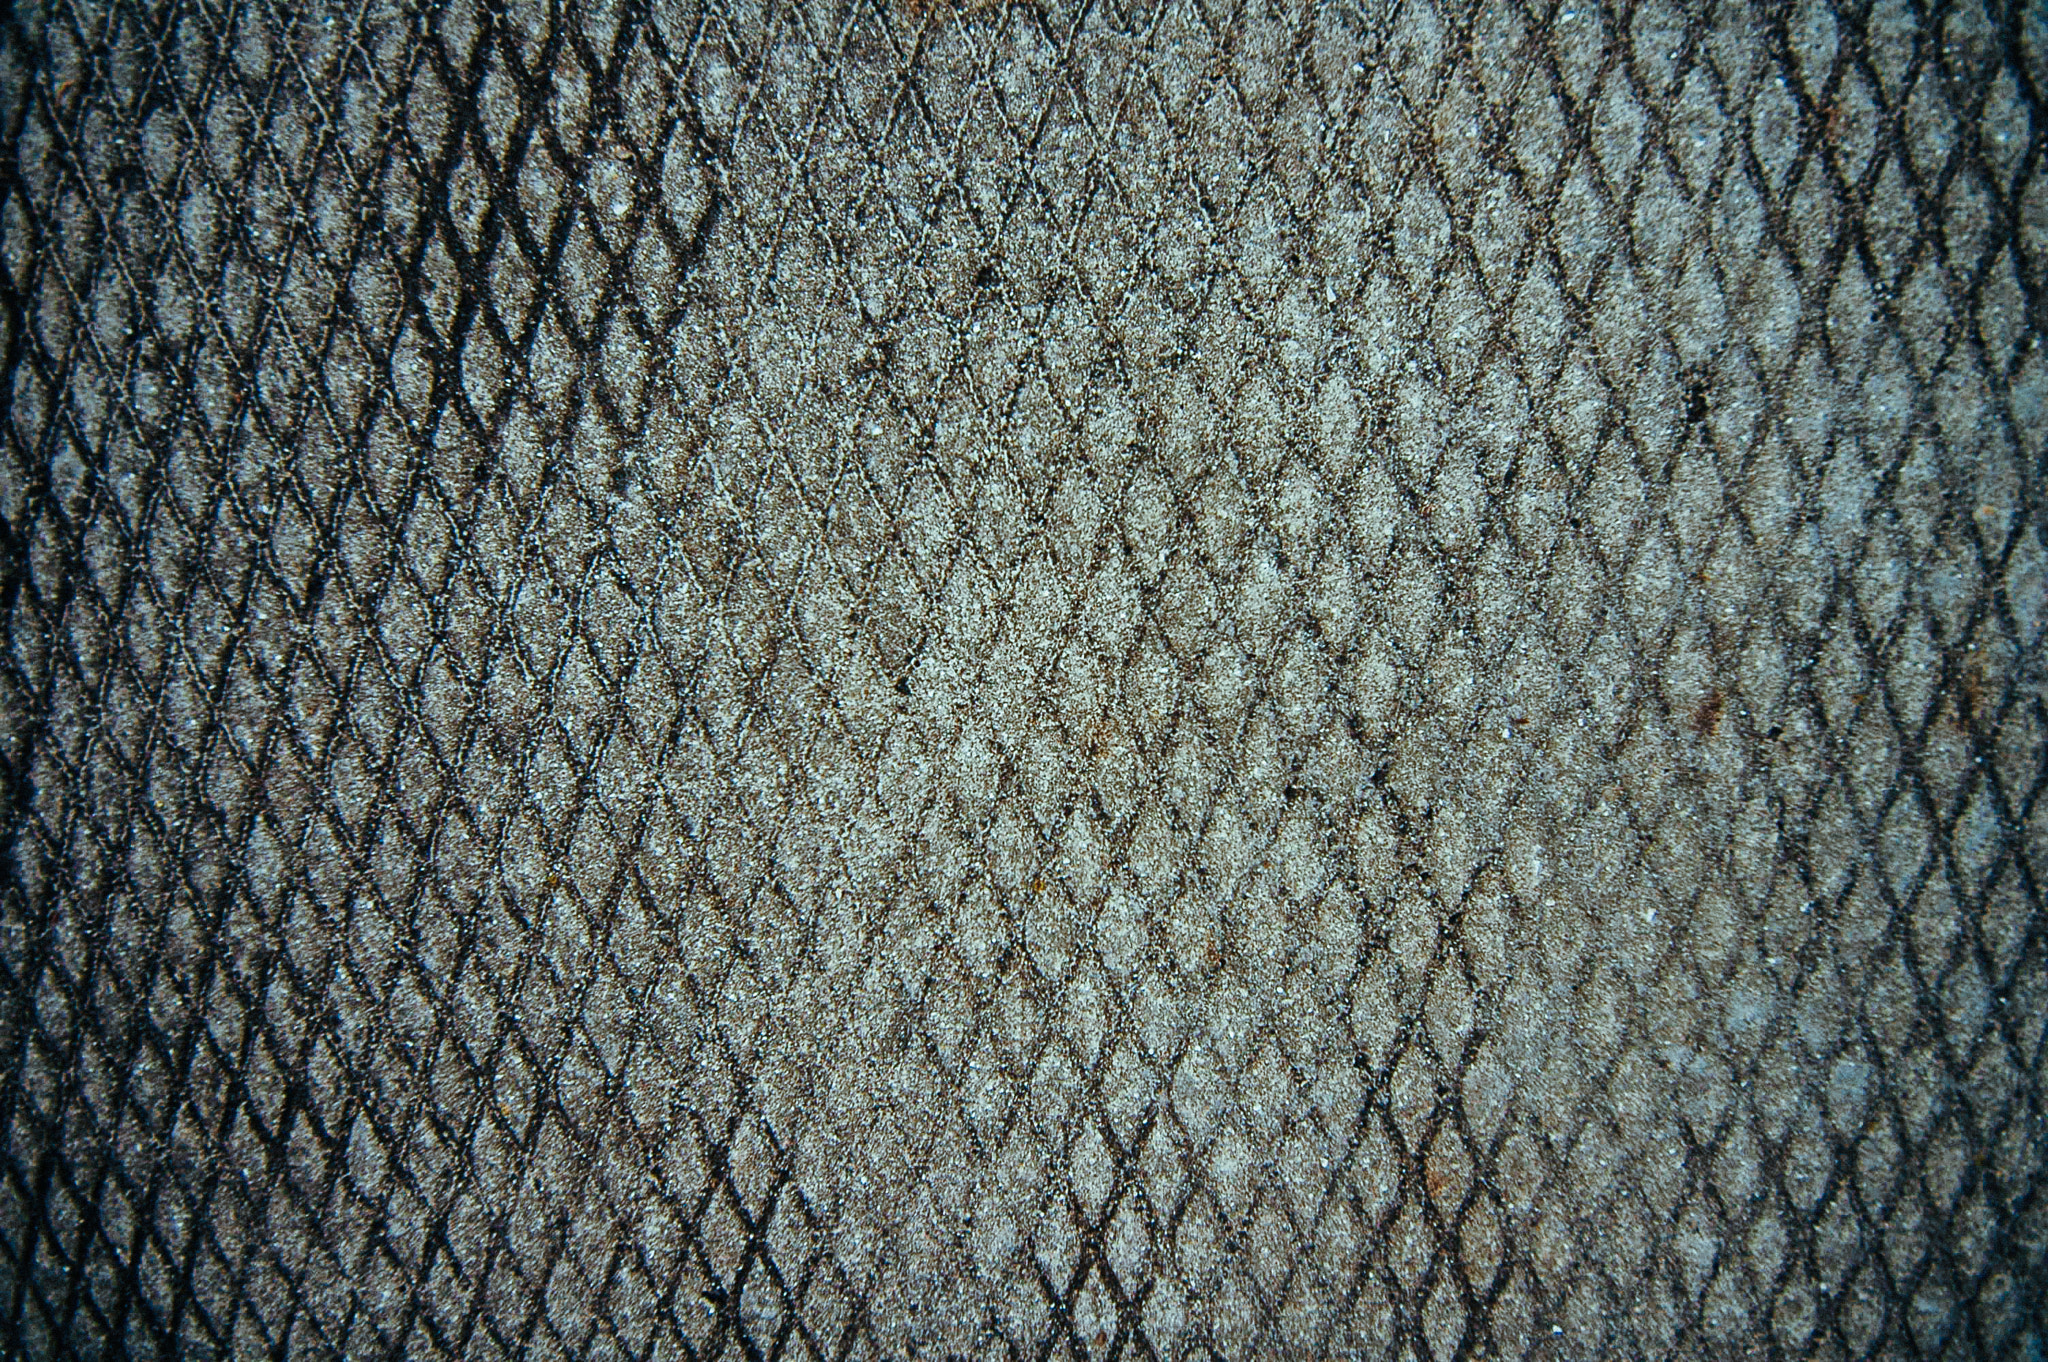 Nikon D70 sample photo. Diamond  concrete pattern photography